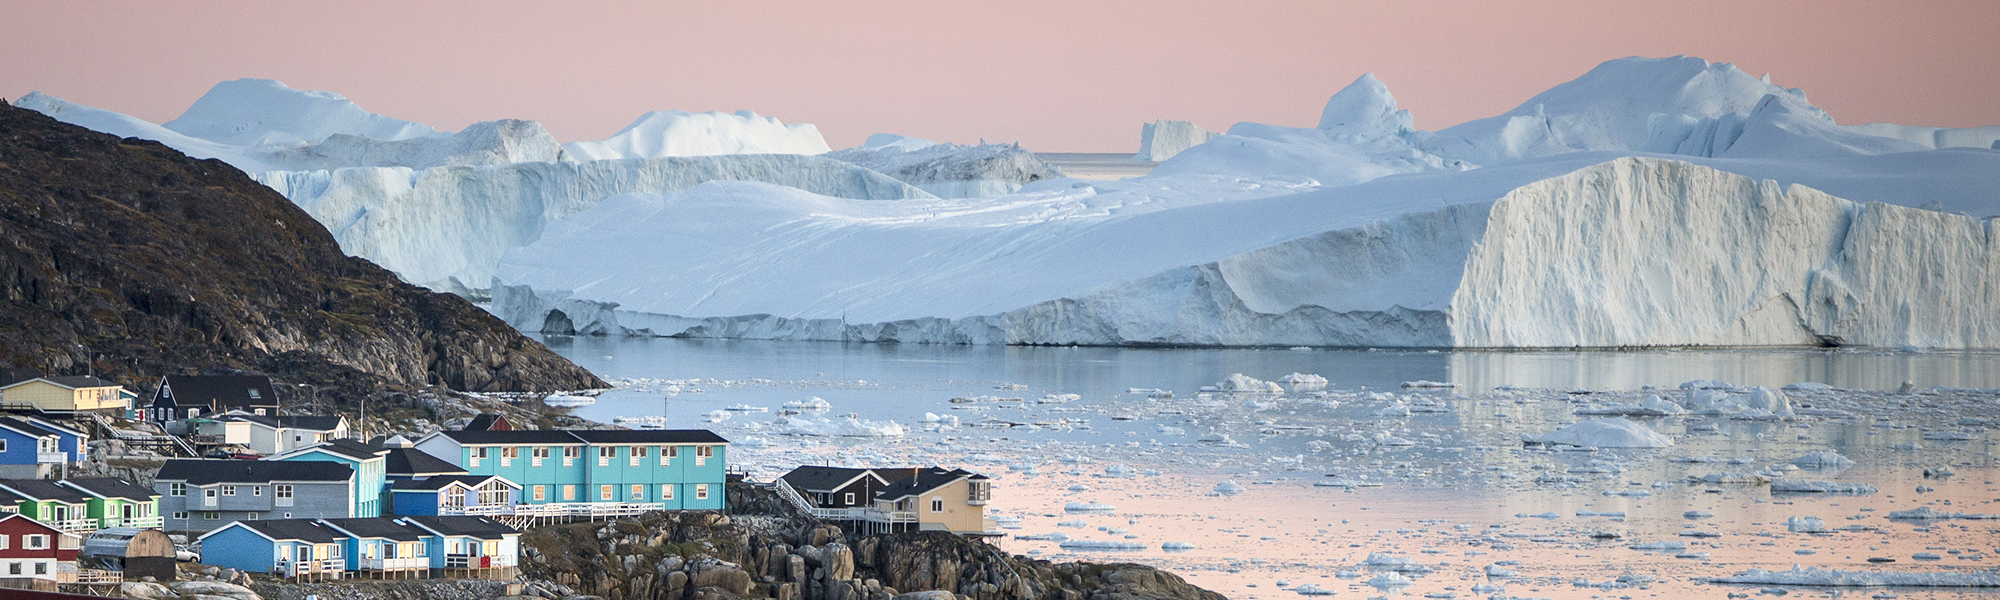 Voyage sur mesure Baie de Disko © Mads Pihl - Visit-Greenland